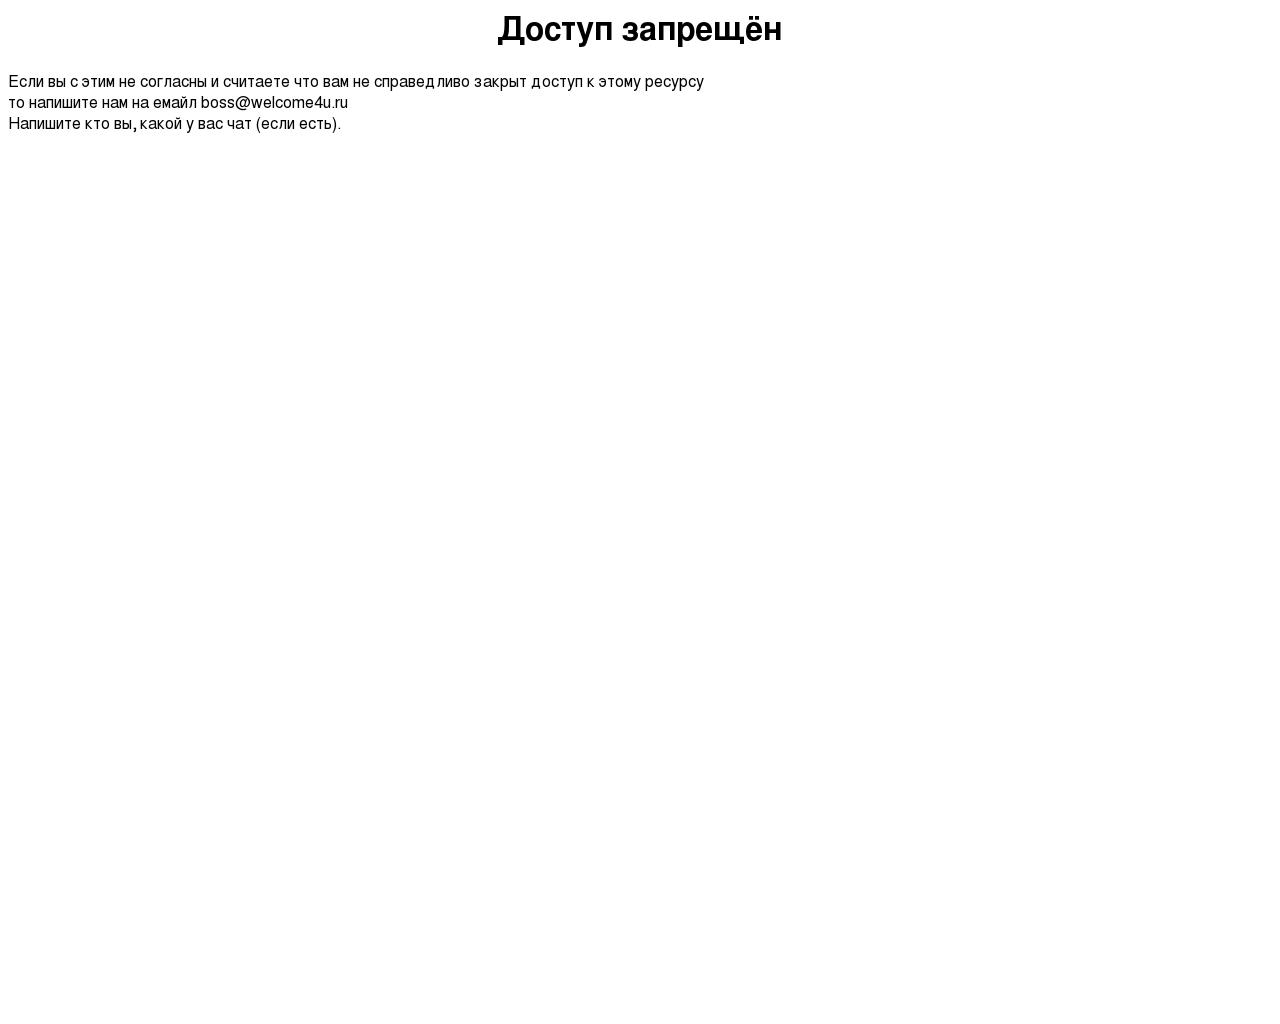 Изображение сайта welcom4u.ru в разрешении 1280x1024